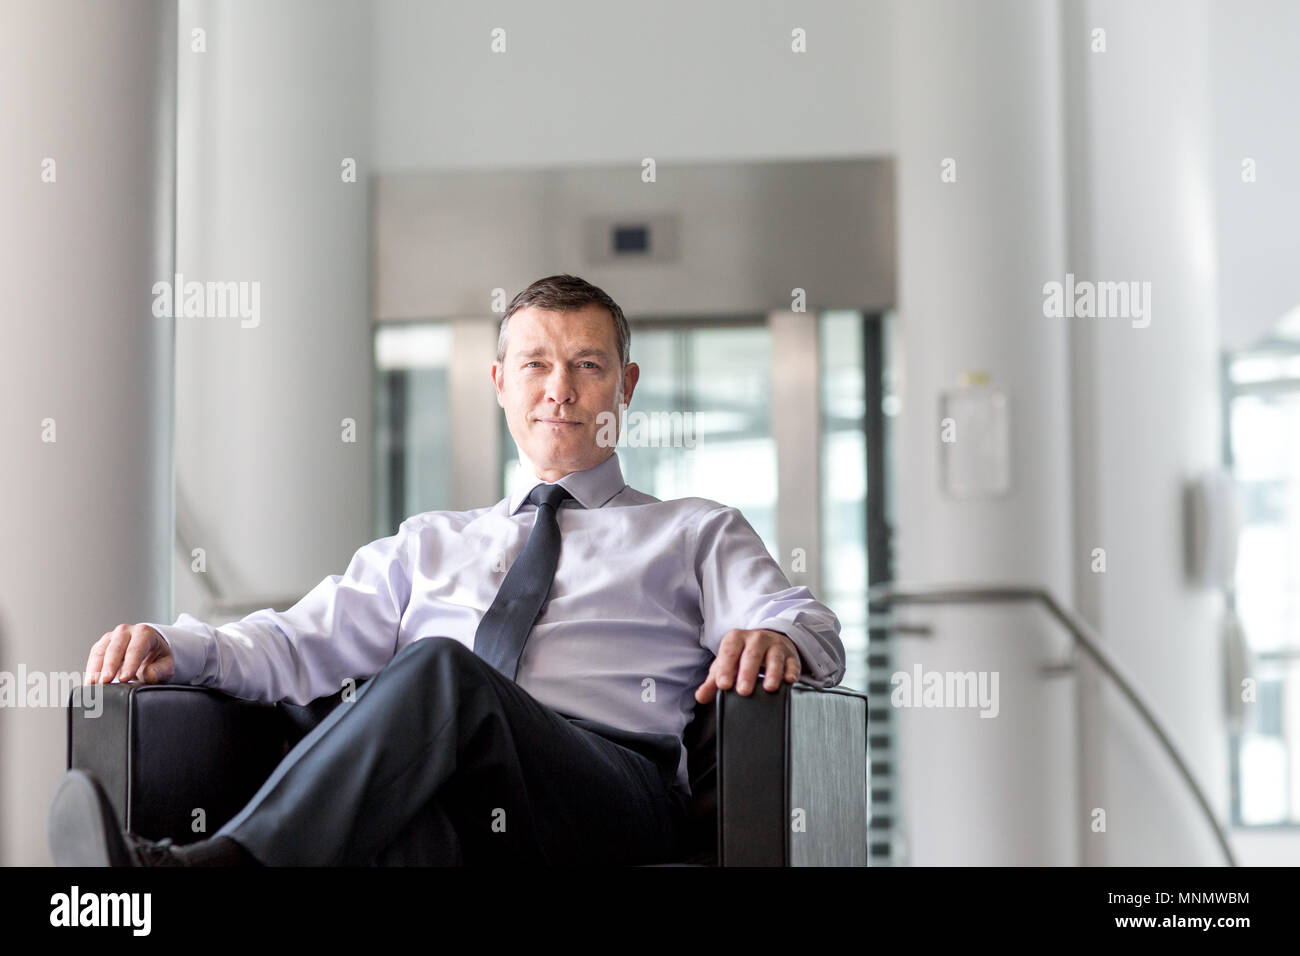 Portrait of senior business executive Banque D'Images